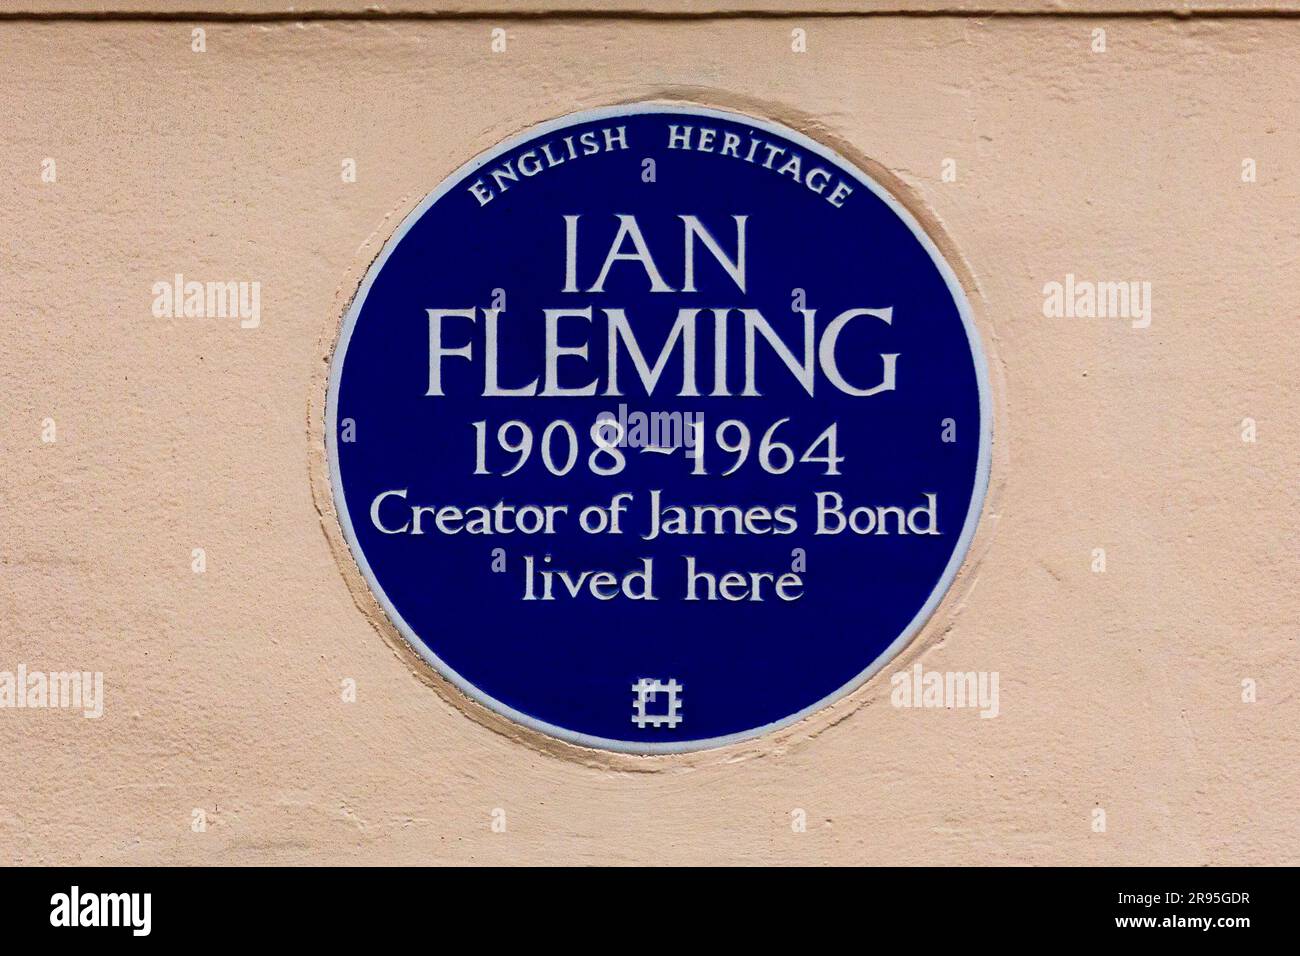 blaue gedenktafel zum englischen Kulturerbe in belgravia zur Feier des Autors Ian Fleming, des Schöpfers von James Bond 007 Stockfoto